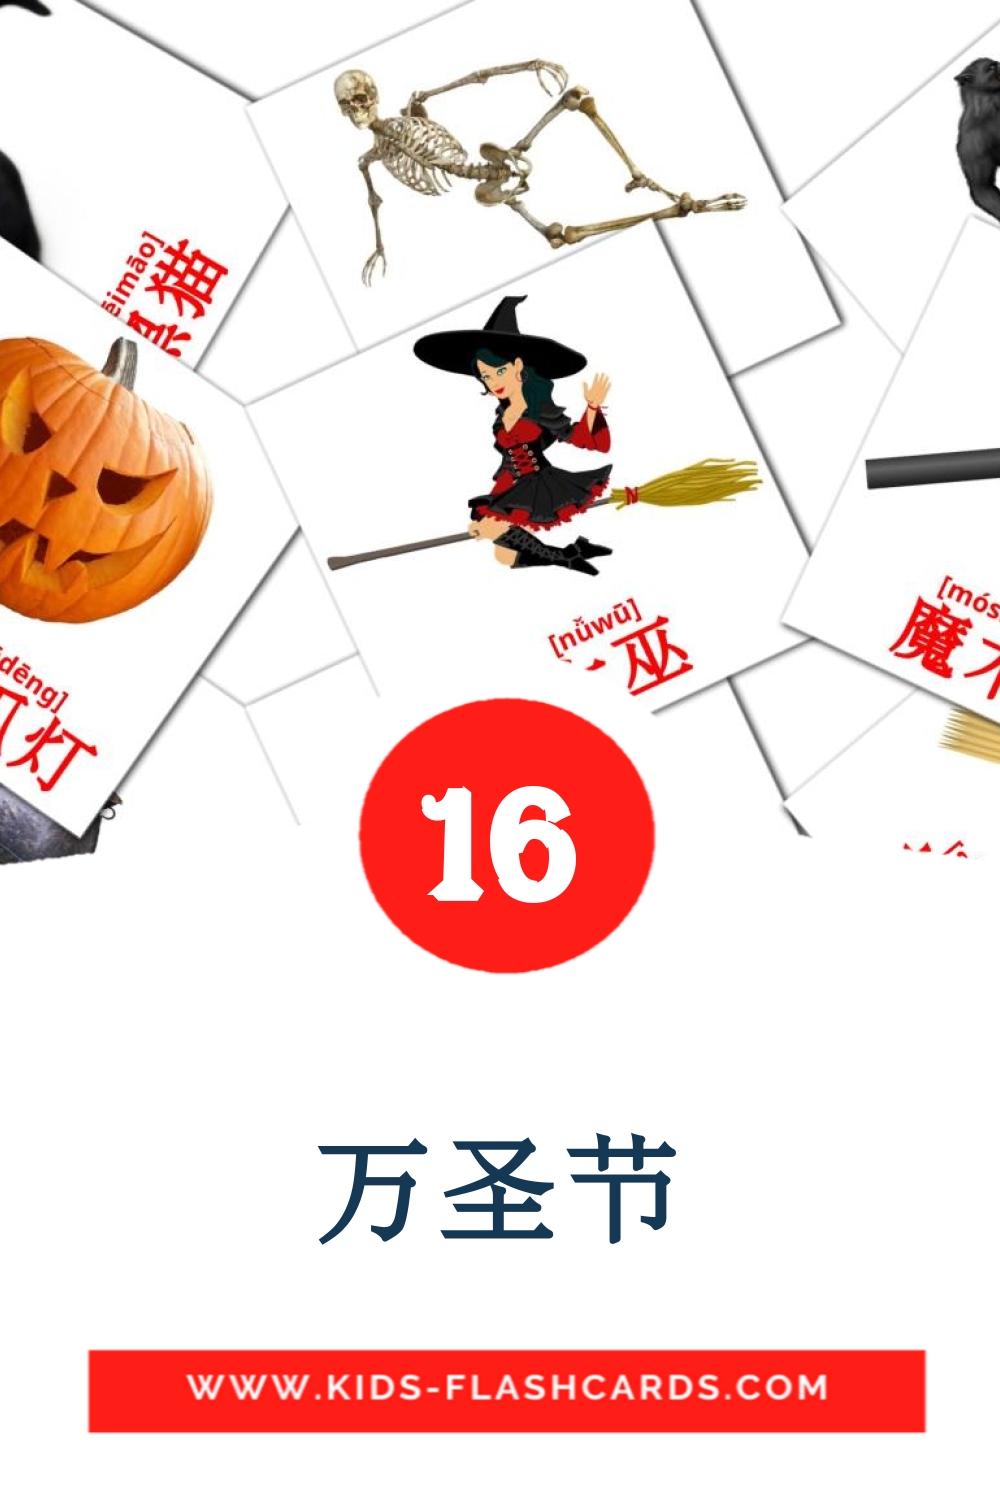 16 tarjetas didacticas de 万圣节 para el jardín de infancia en chino(simplificado)